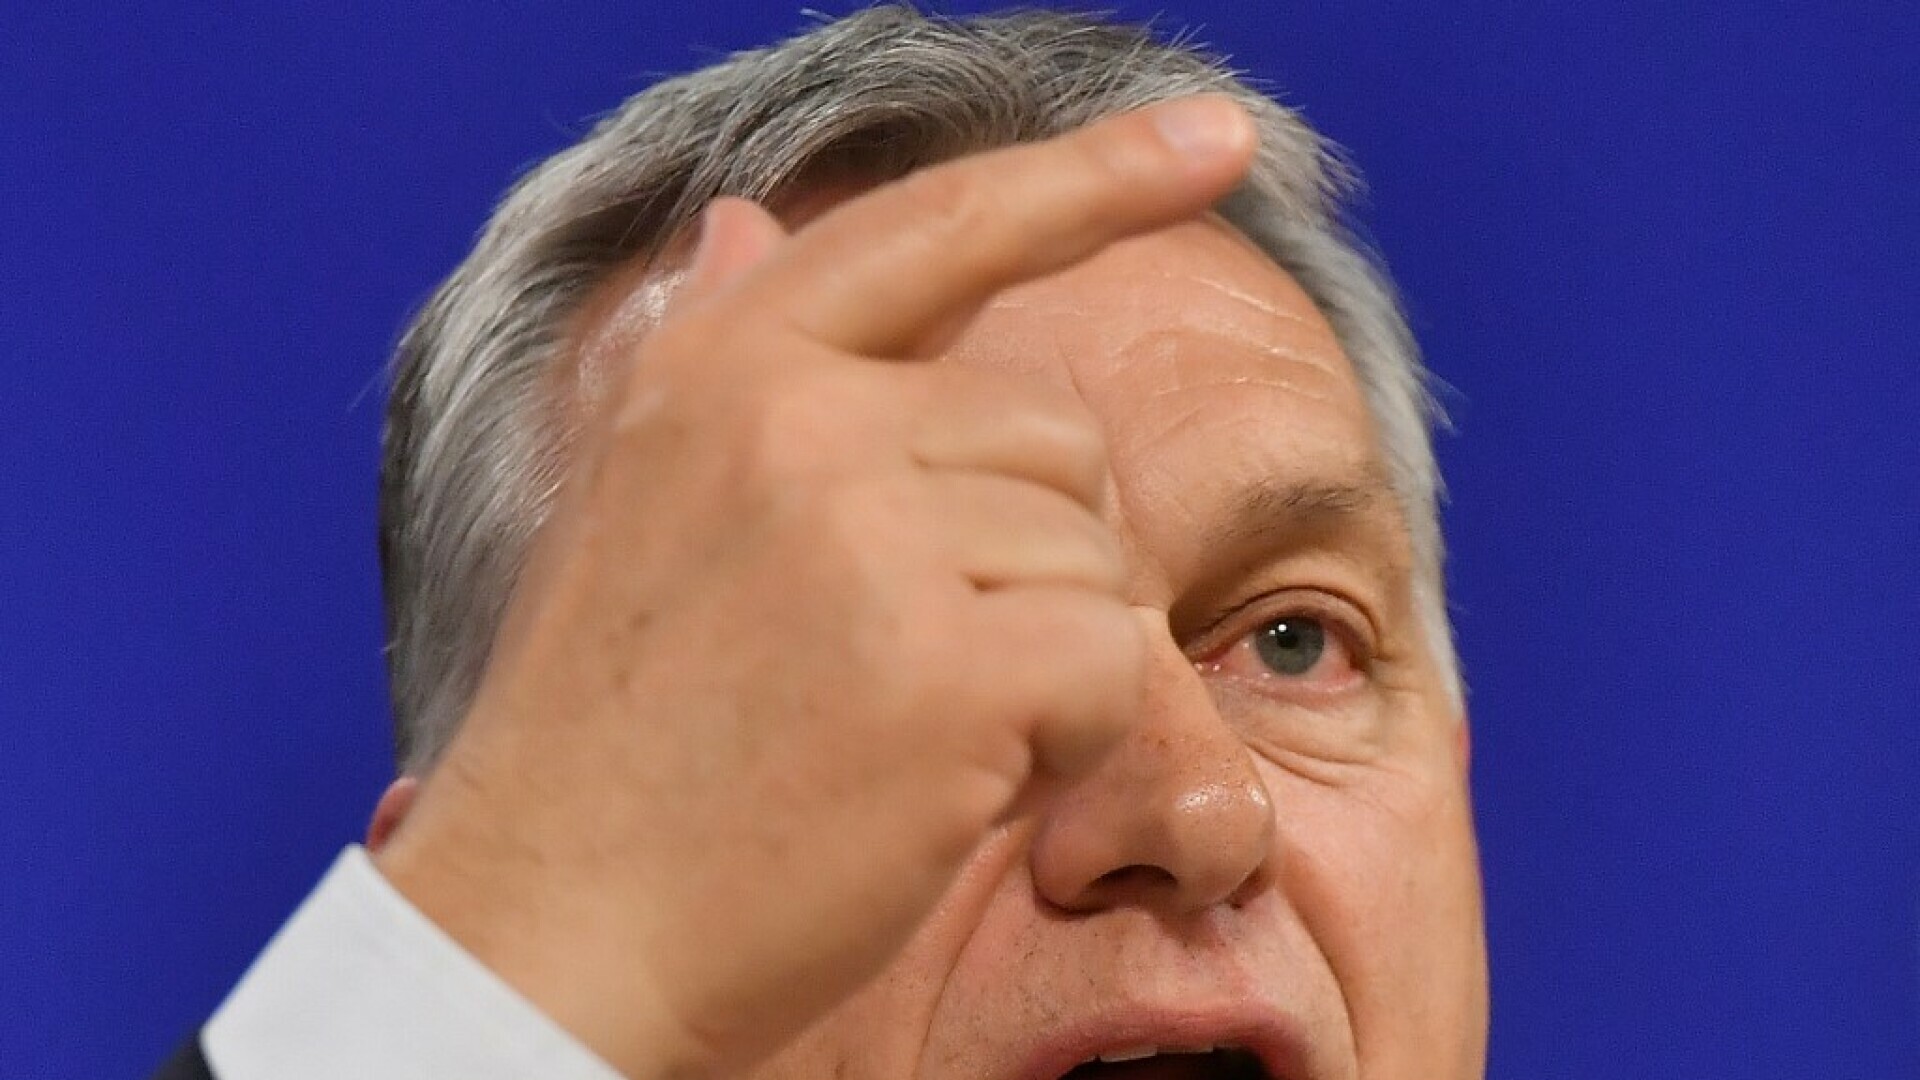 Orban zaustavio isplatu novca Ukrajini, London traži da međunarodna koalicija pošalje zrakoplove